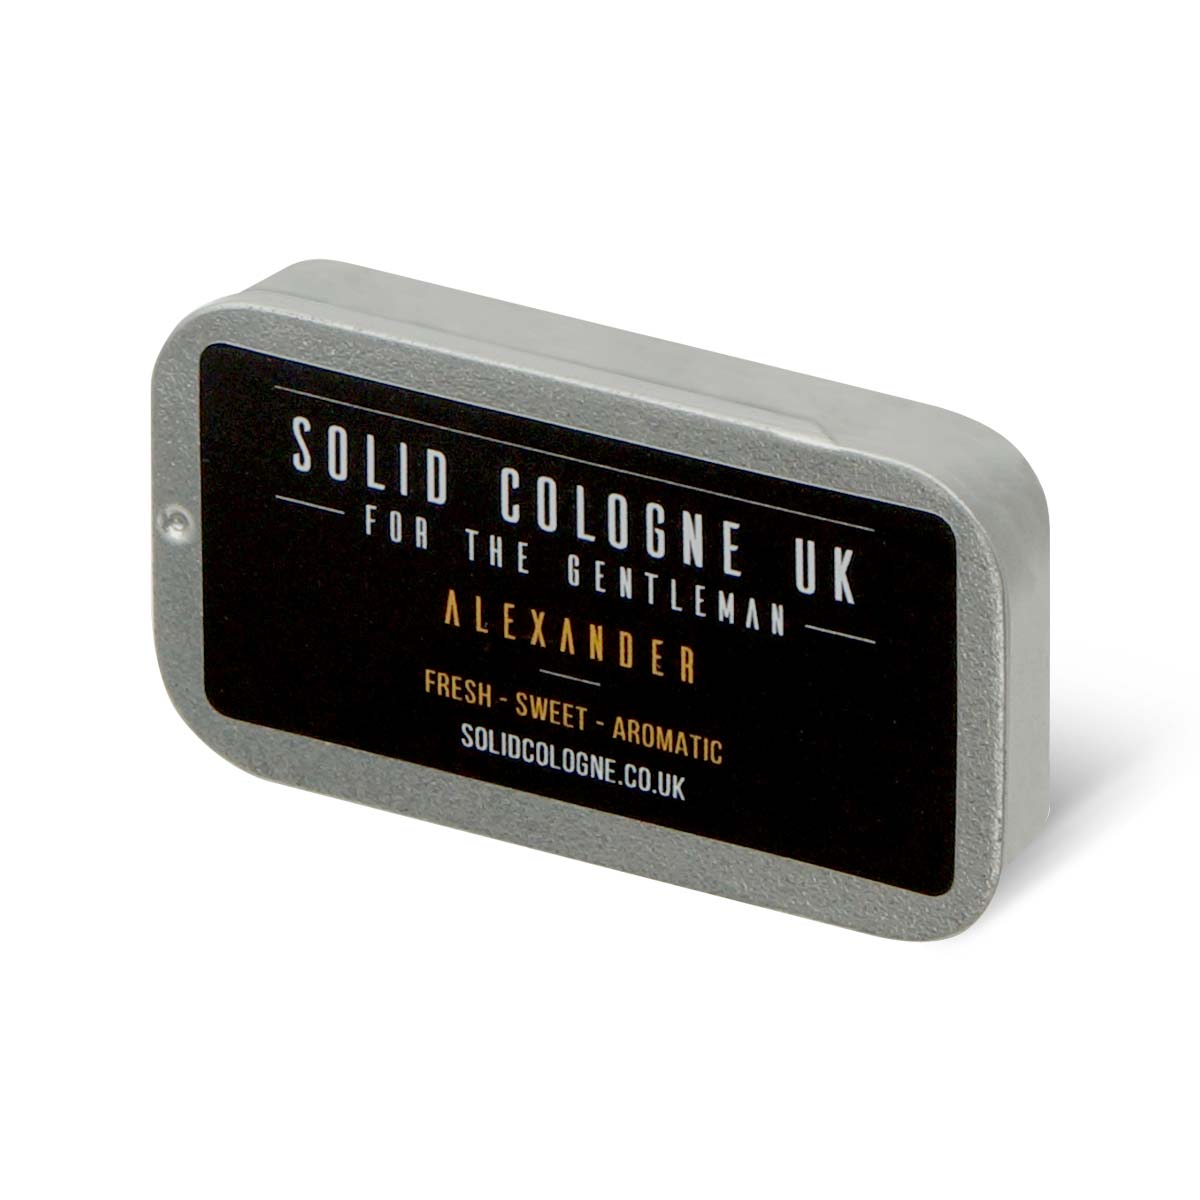 Solid Cologne UK アリクサンダー (練り香水 メンズ) 18ml-p_1